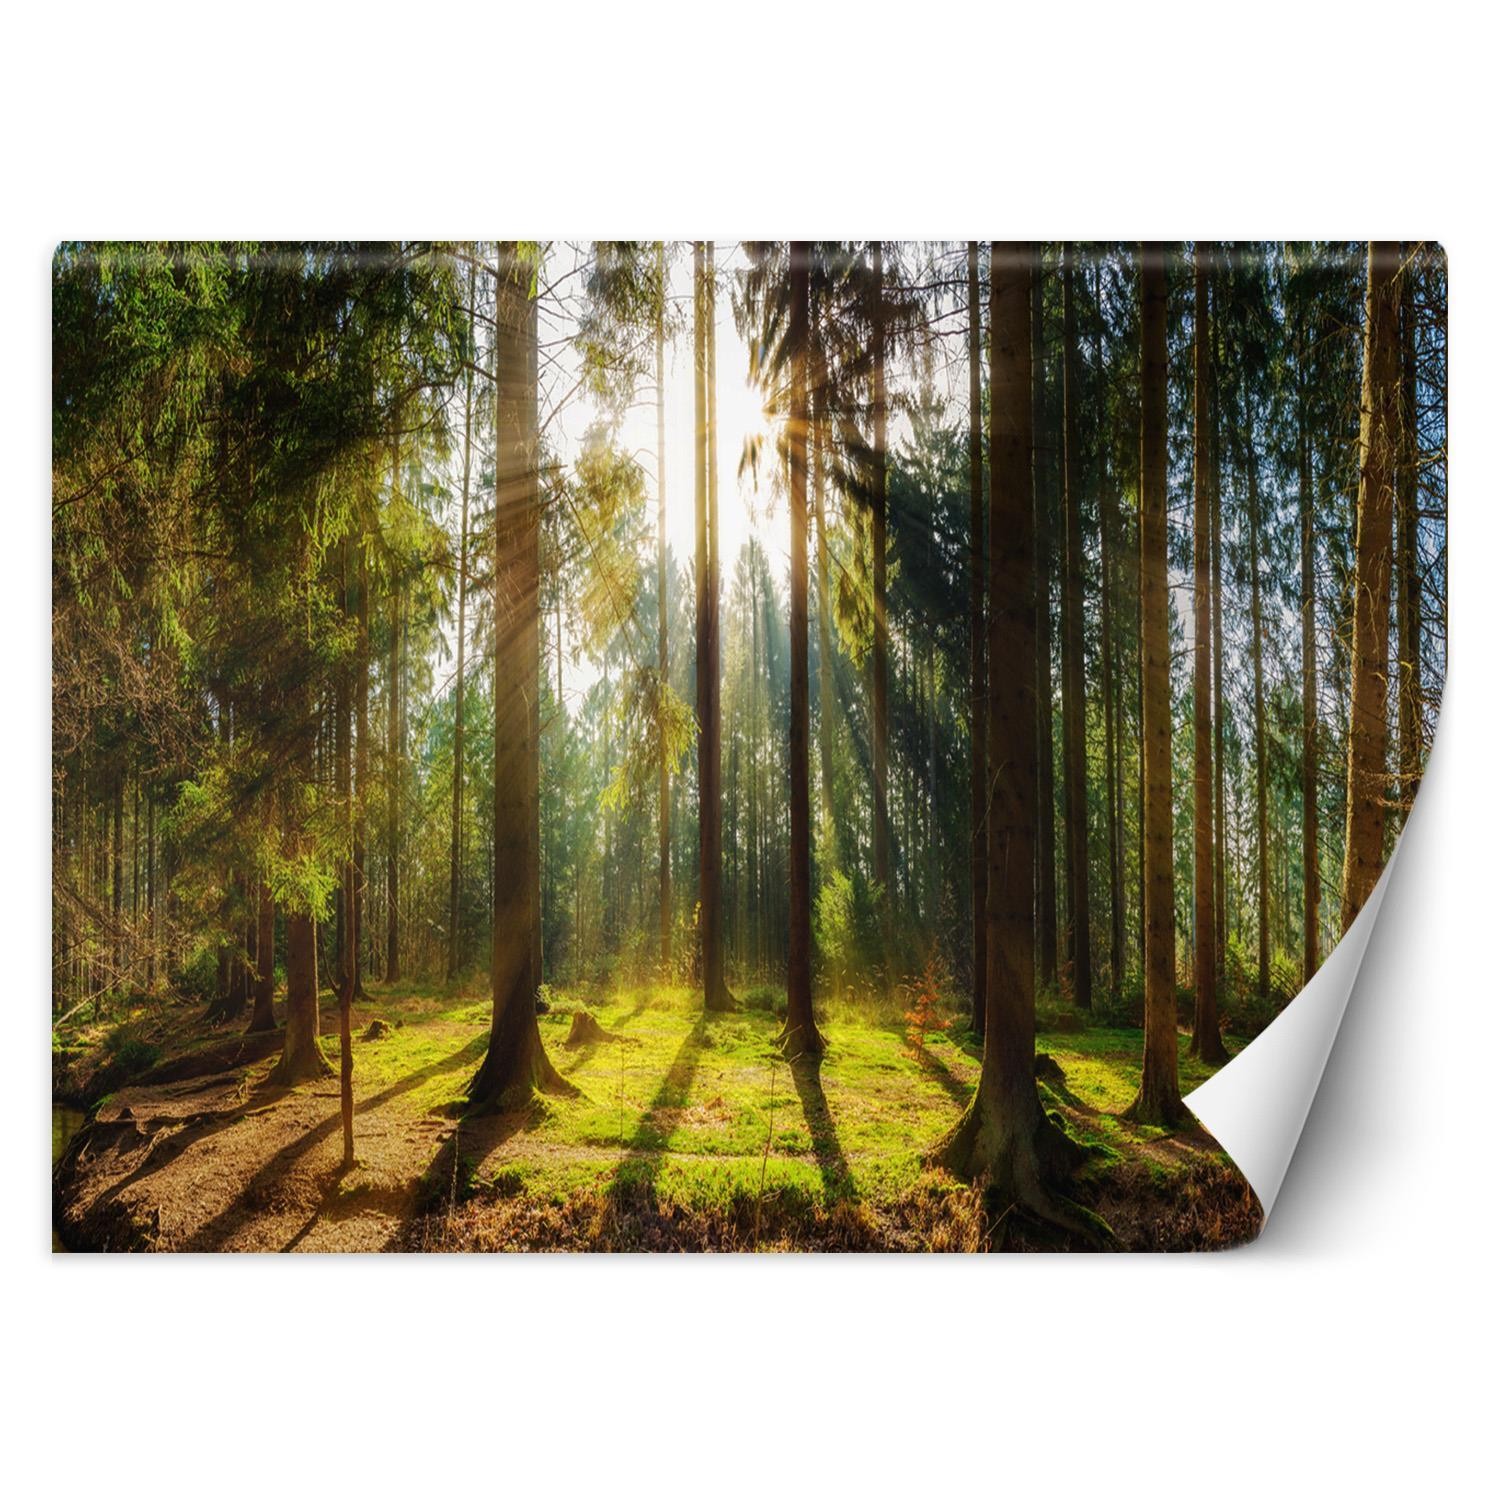 Trend24 – Behang – Bos In De Zon – Vliesbehang – Fotobehang Natuur – Behang Woonkamer – 450×315 cm – Incl. behanglijm